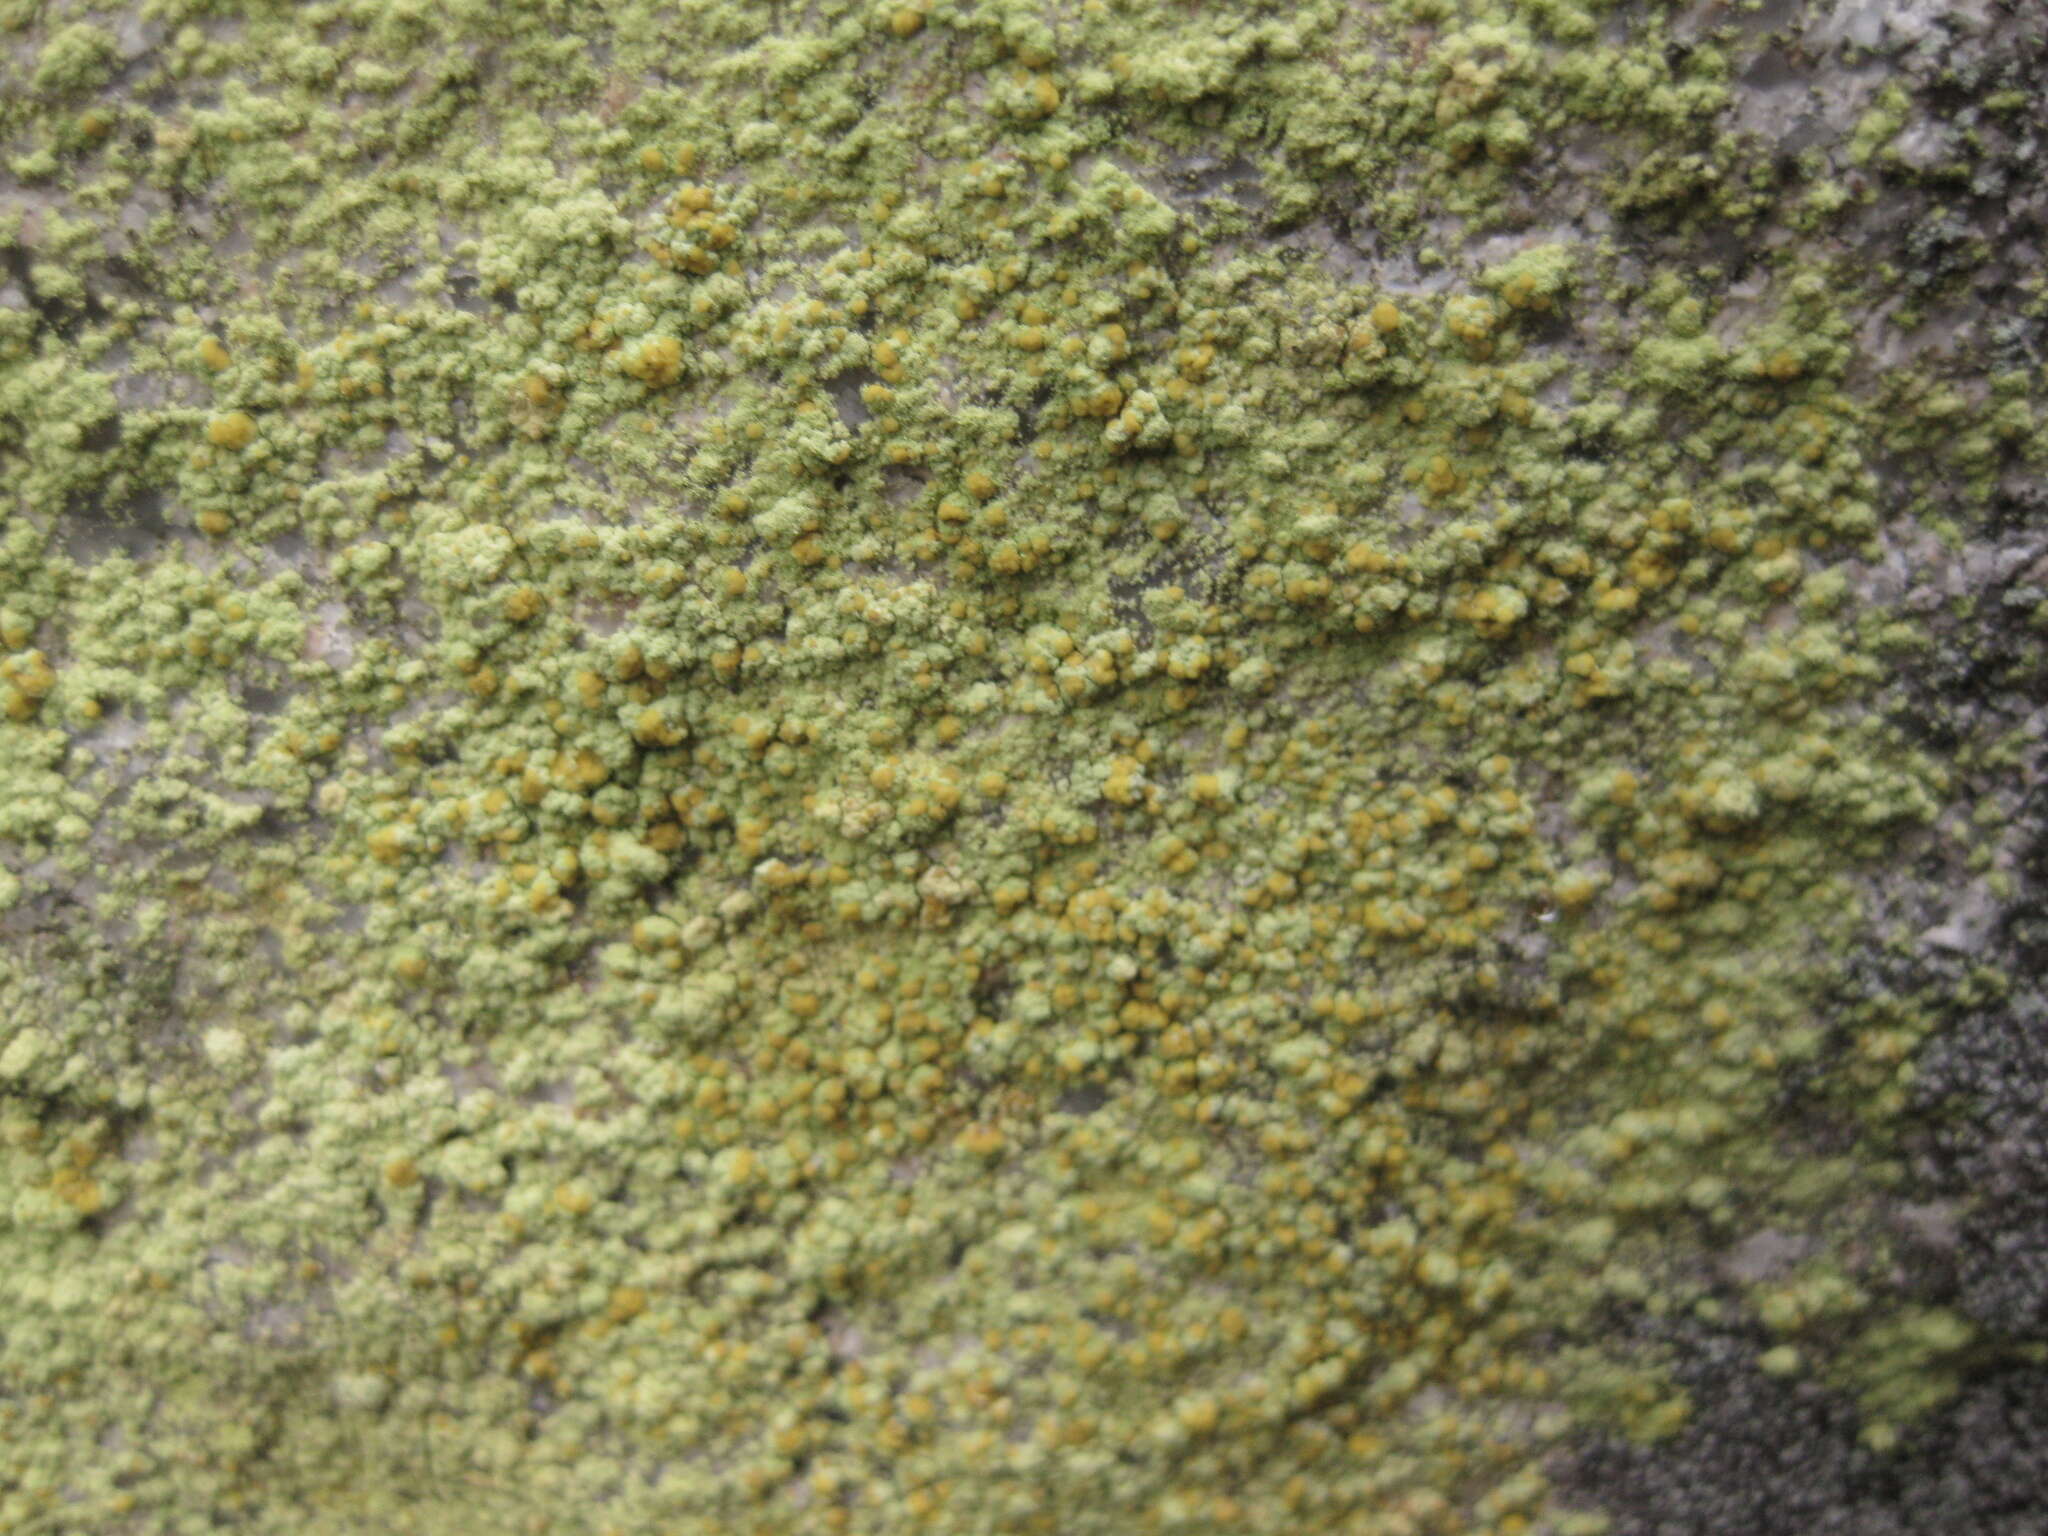 Image of Sulphur dust lichen